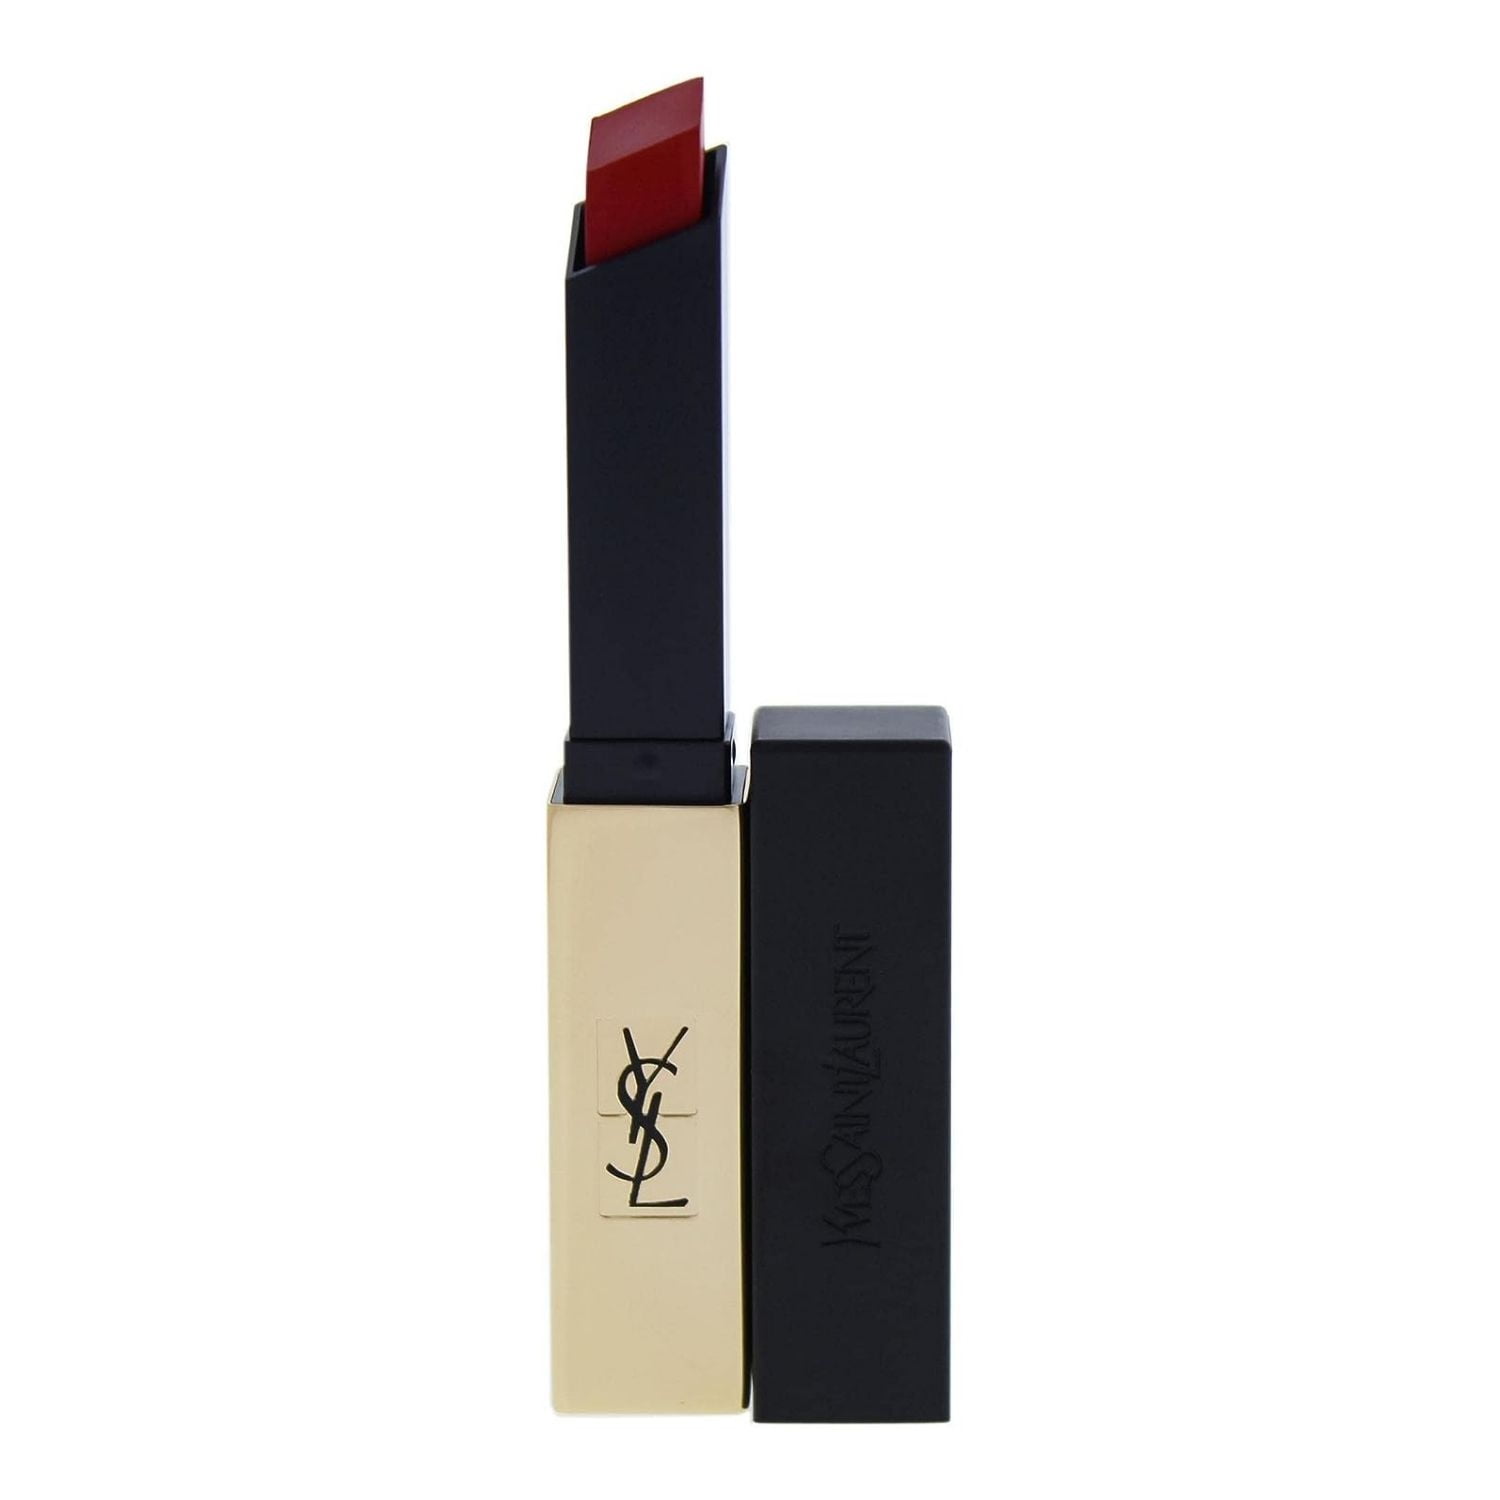 The Slim Matte Longwear Lipstick